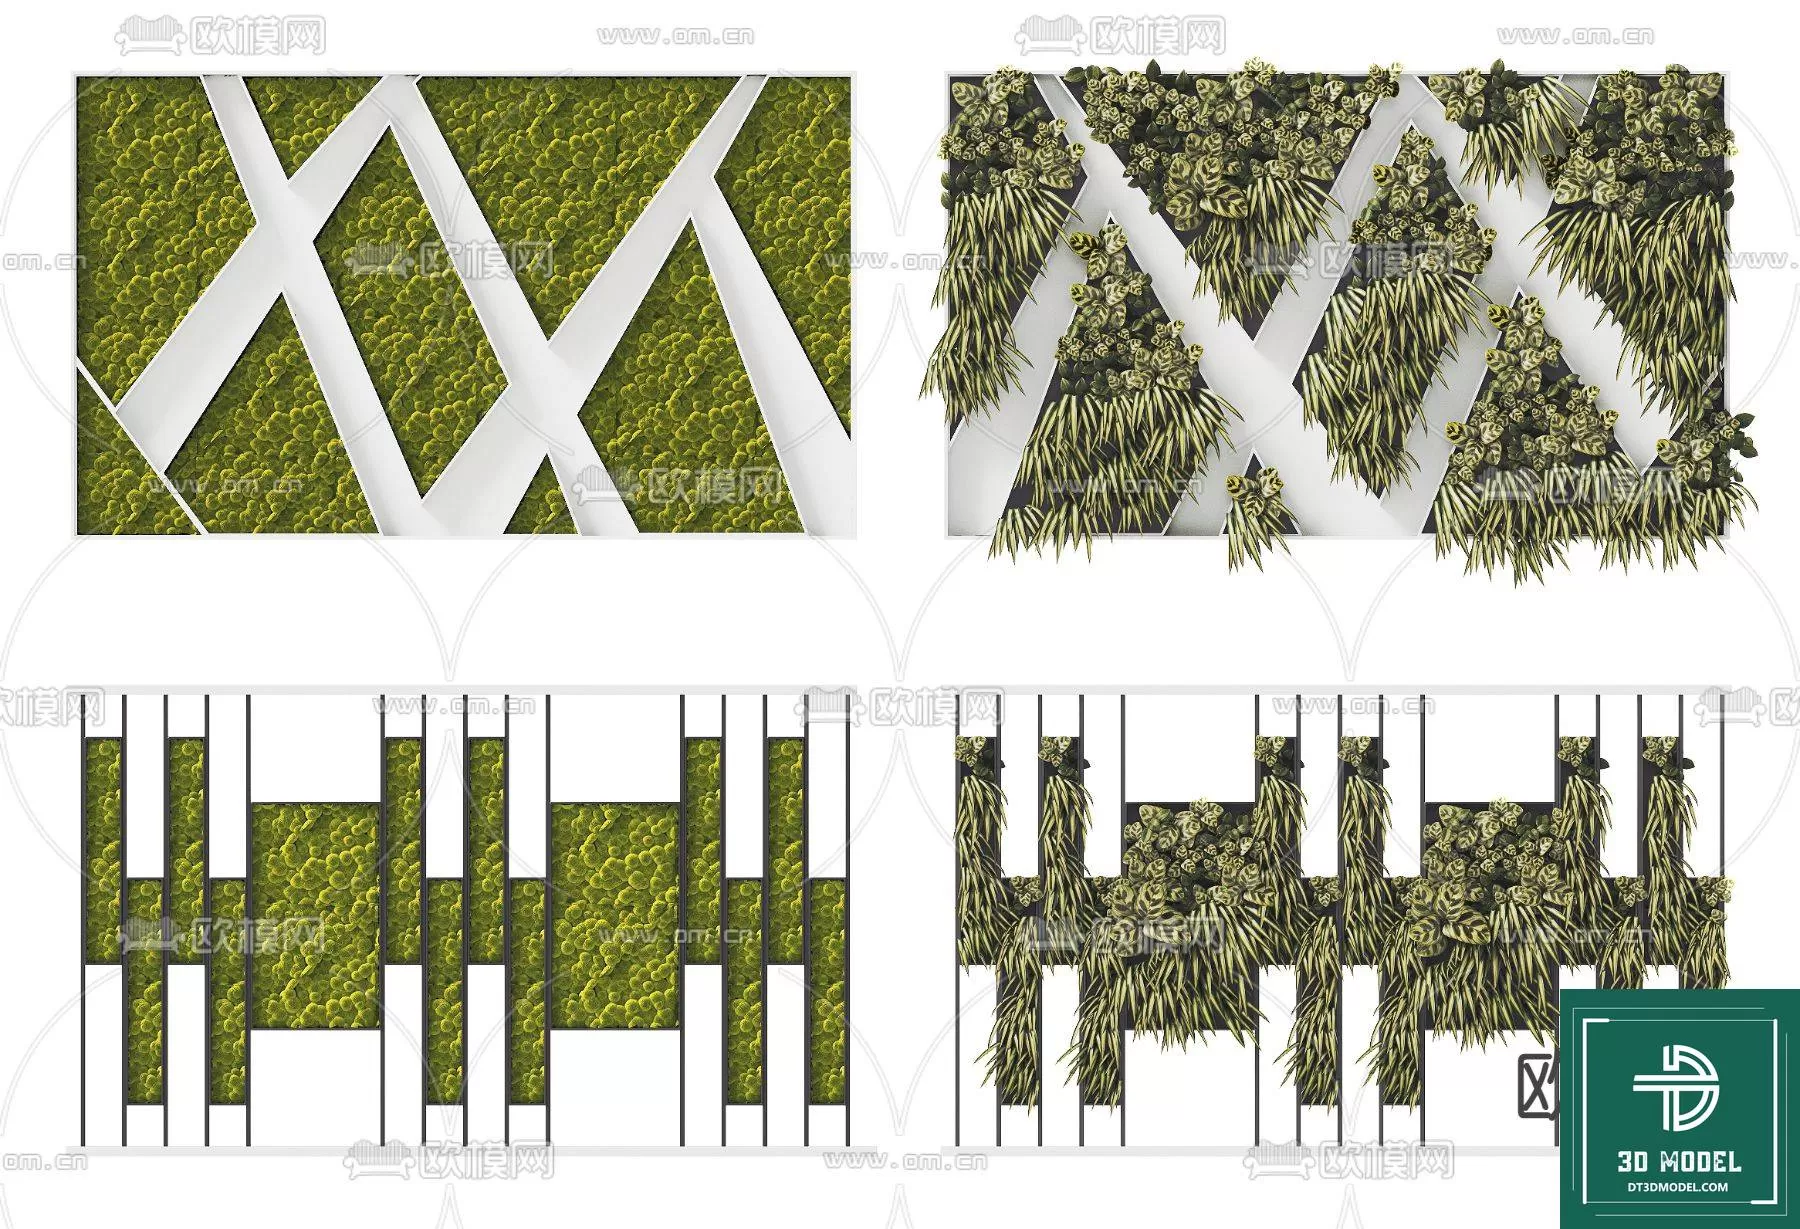 VERTICAL GARDEN – FITOWALL PLANT 3D MODEL – 154